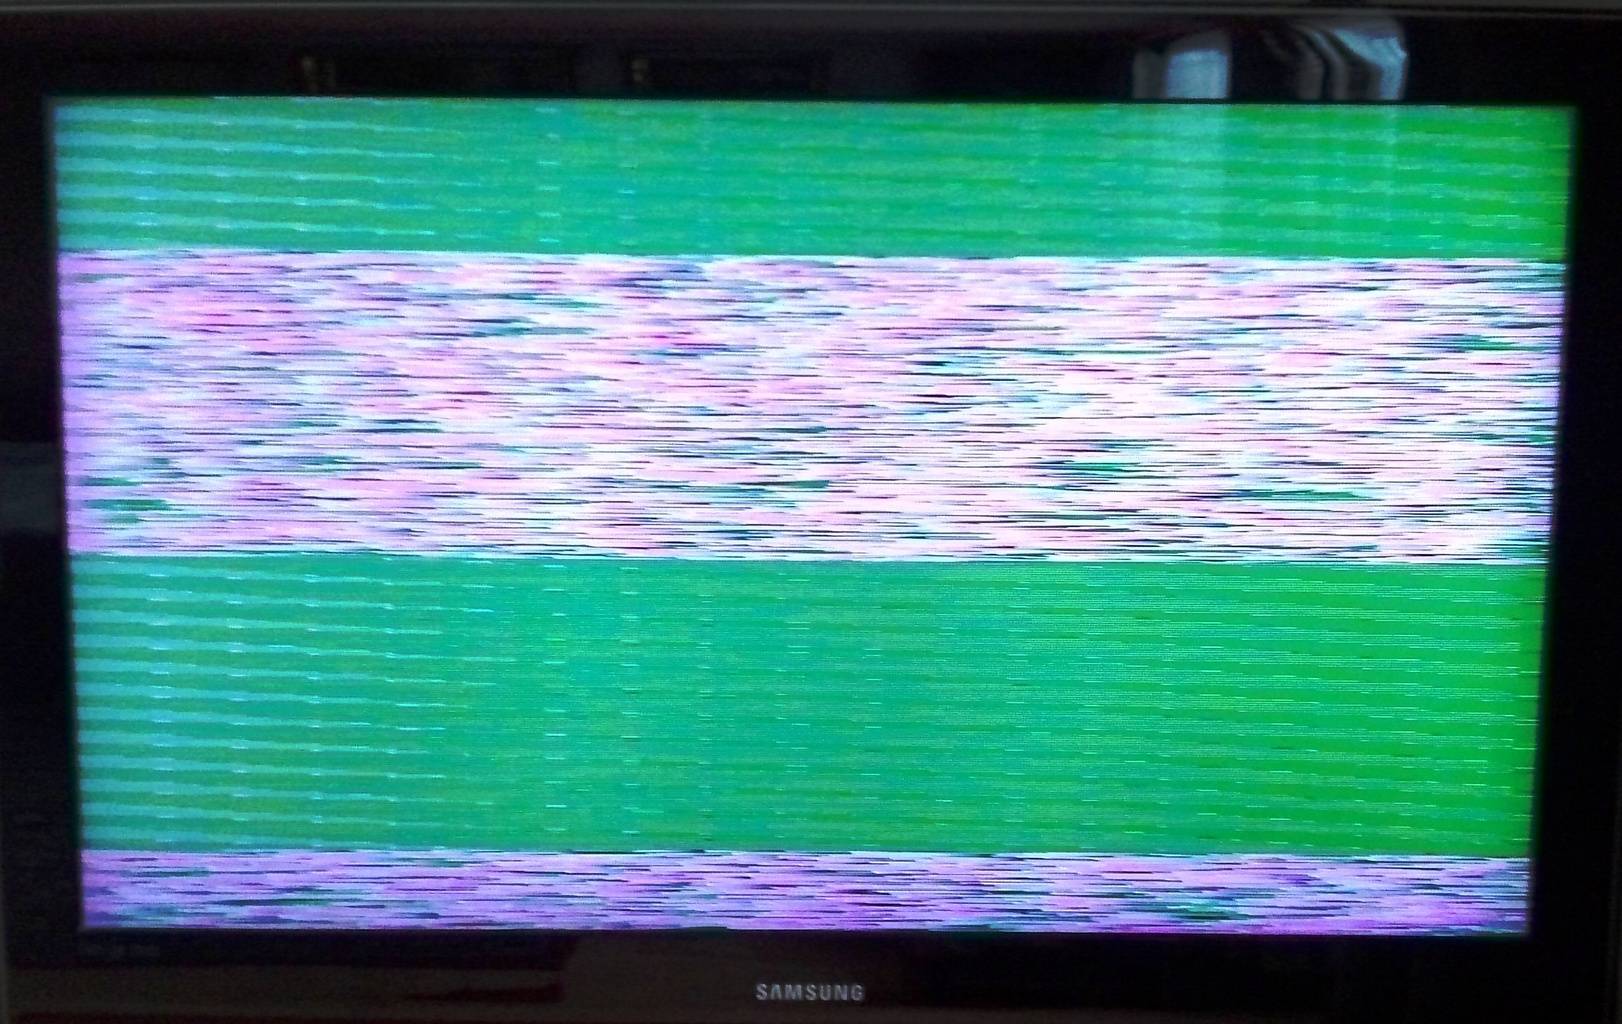 Как починить телевизор, если на экране появились горизонтальные или вертикальные полосы